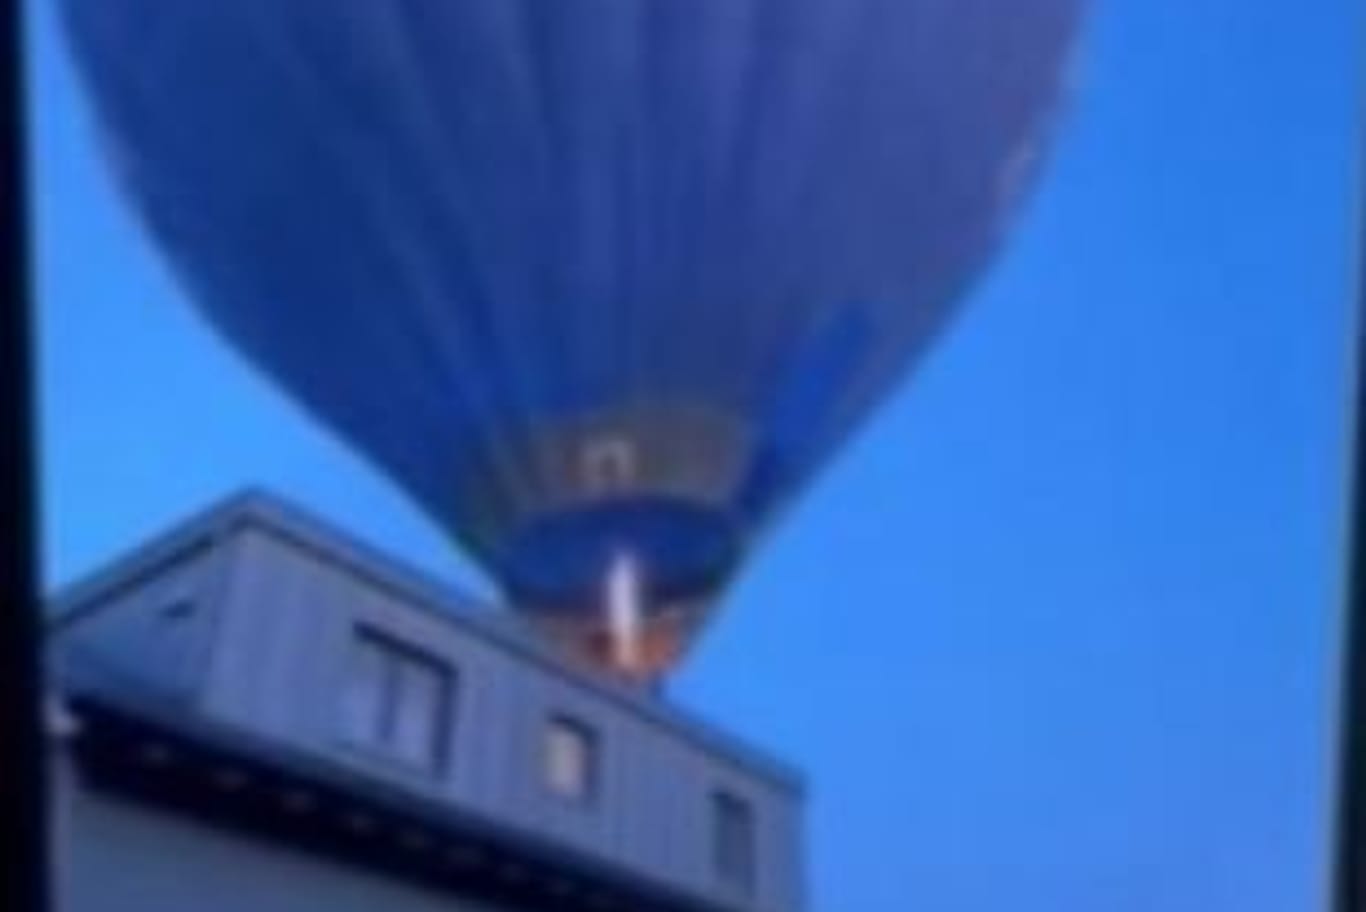 Hier streift der Heißluftballon das Hausdach.